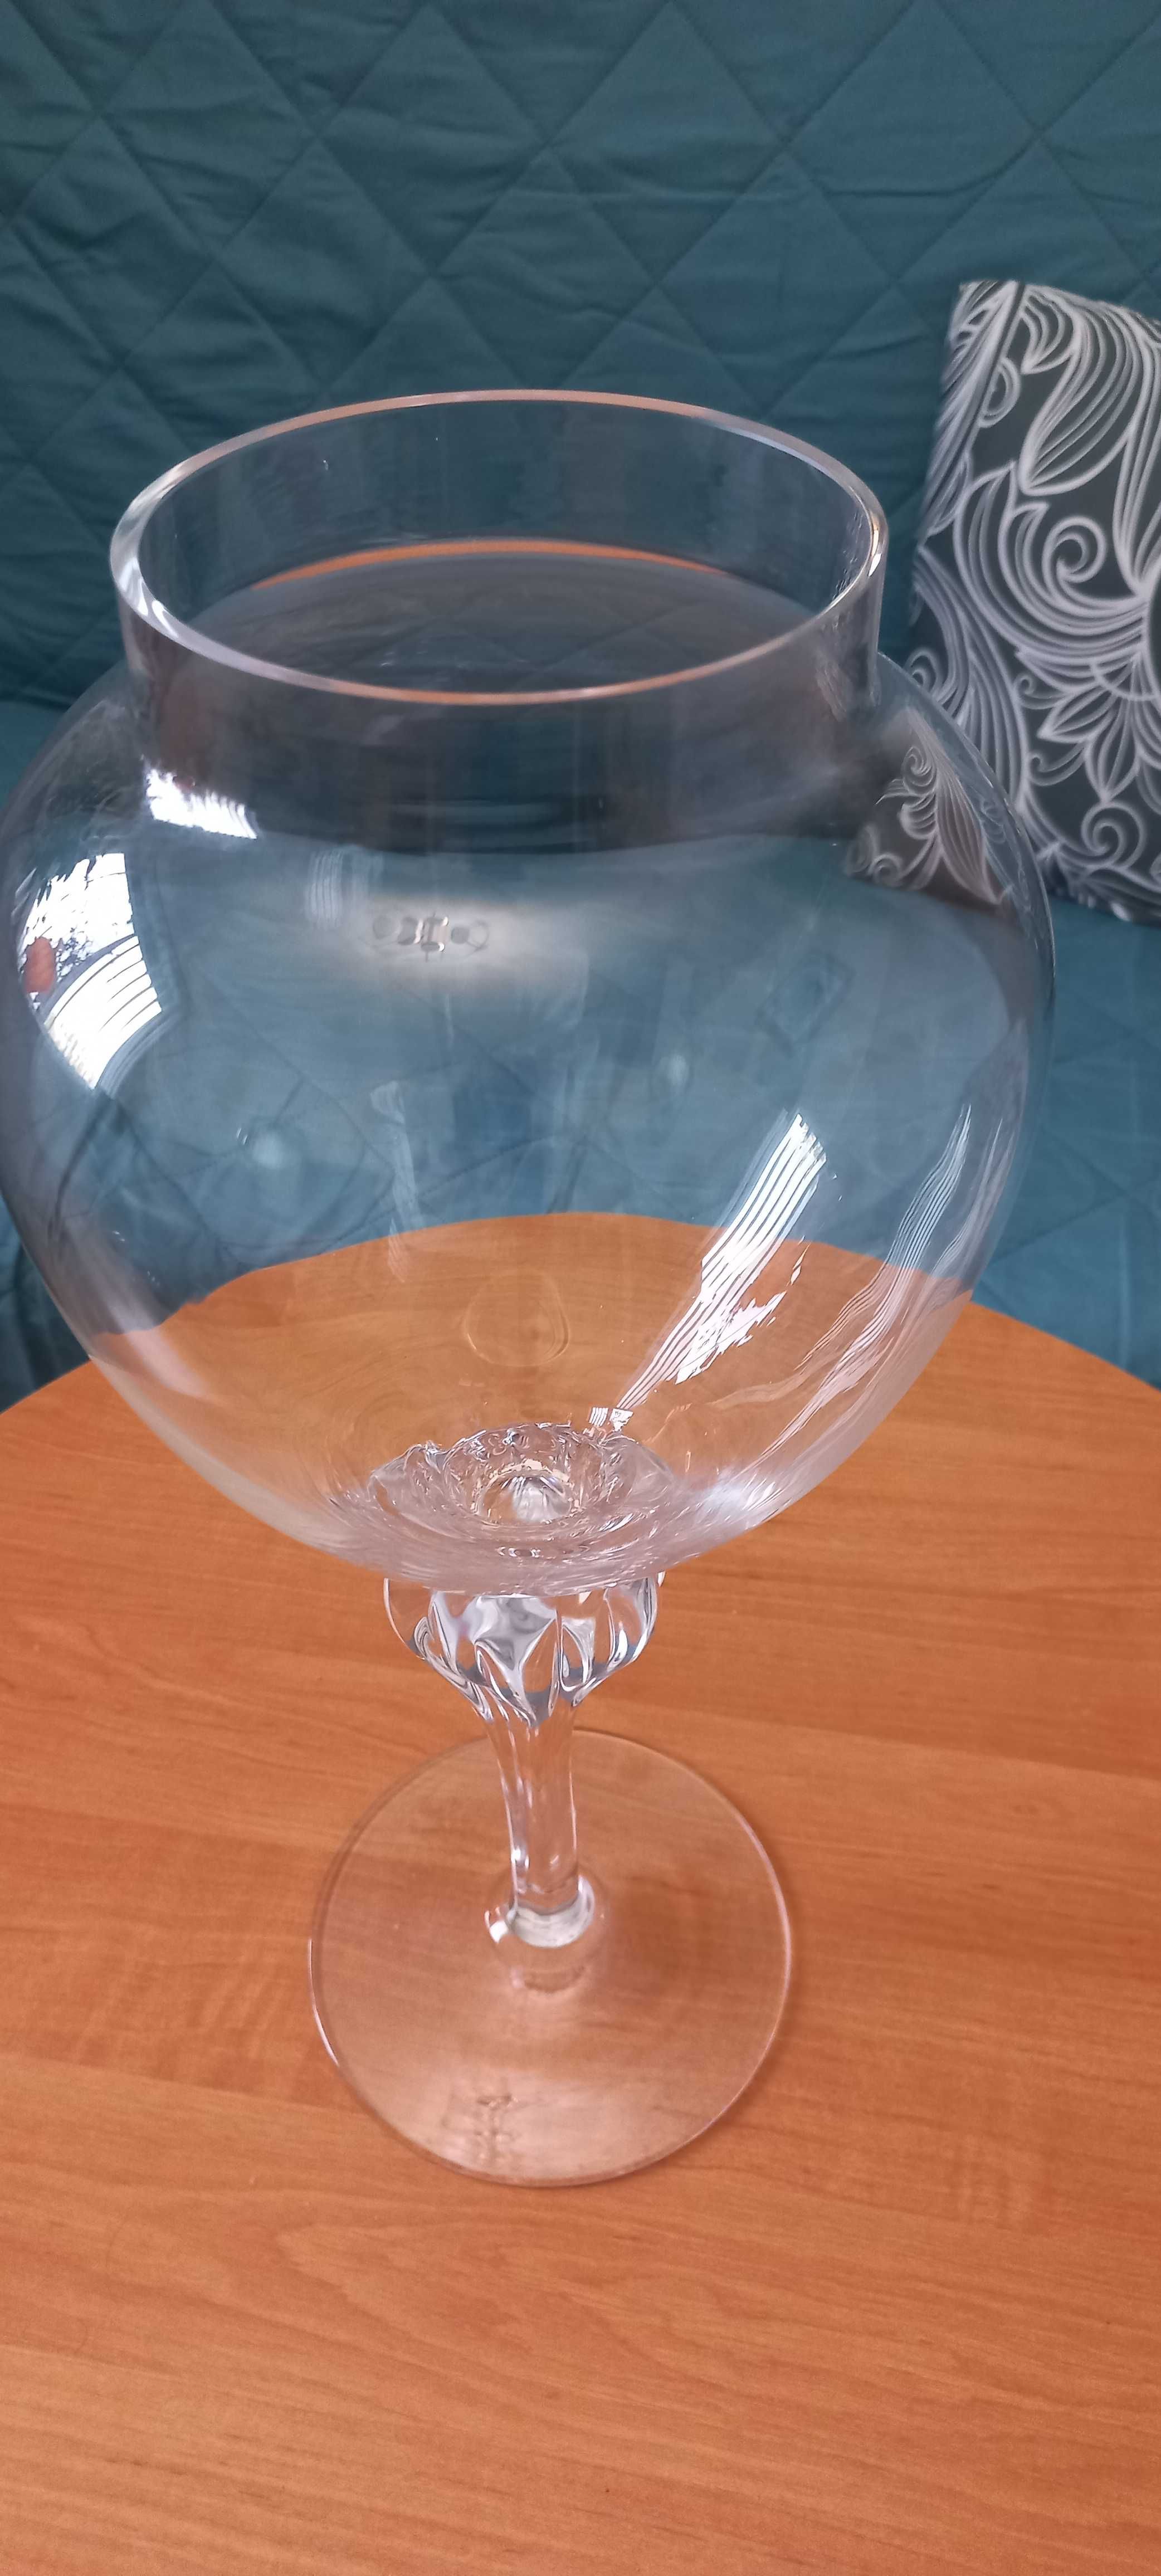 Wazon , duży szklany wazon kielich.